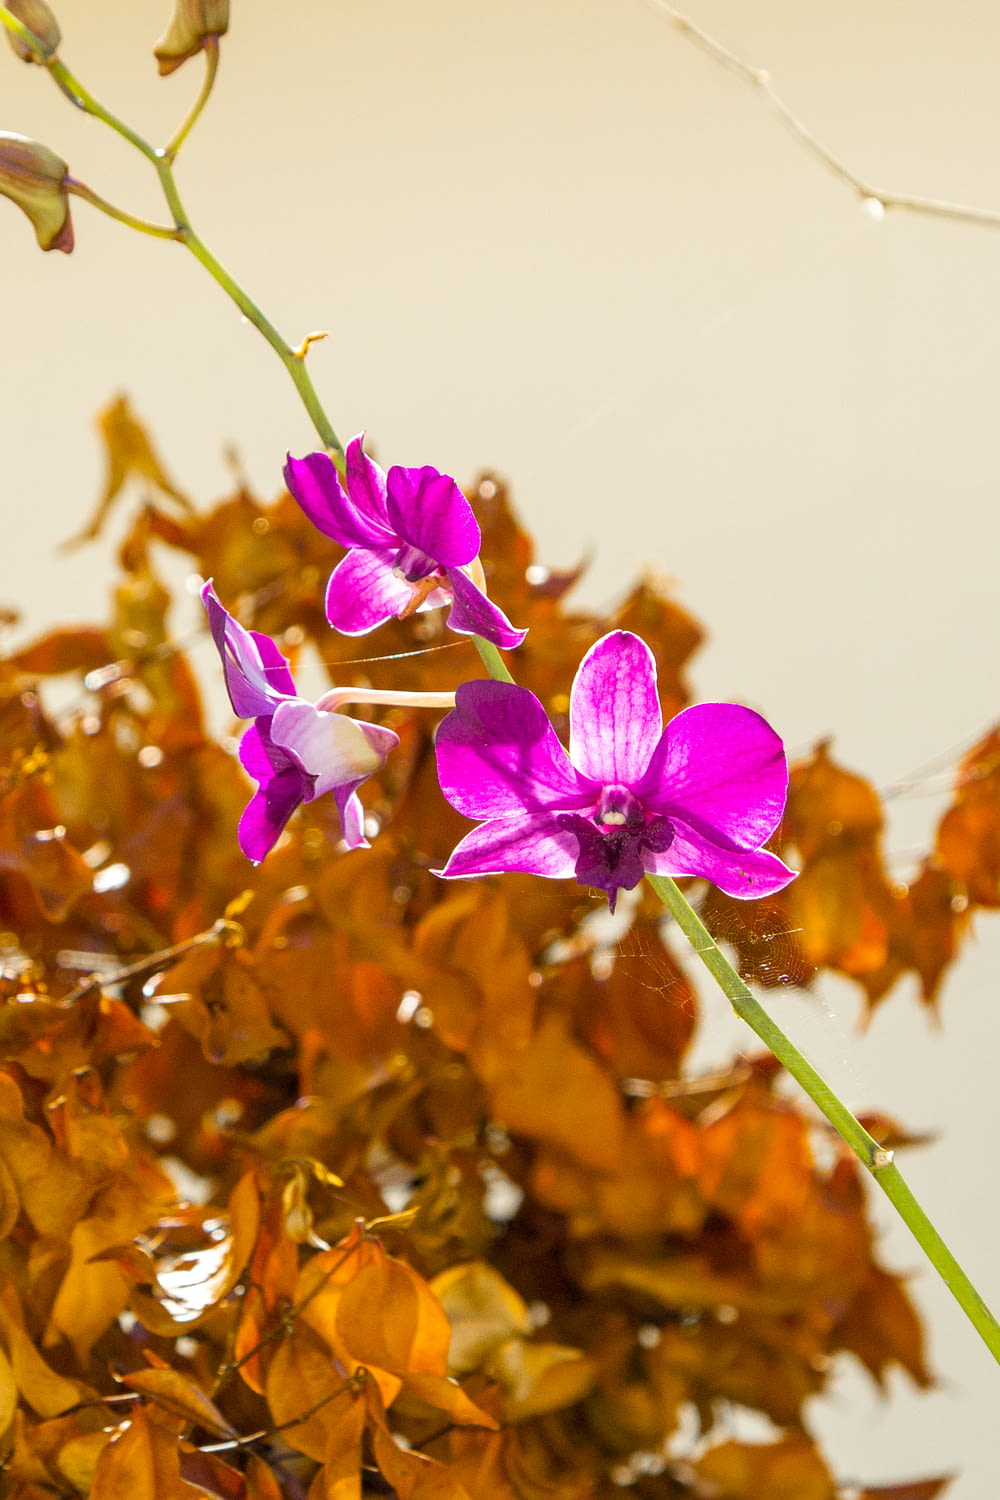 Una flor púrpura sentada encima de una planta verde